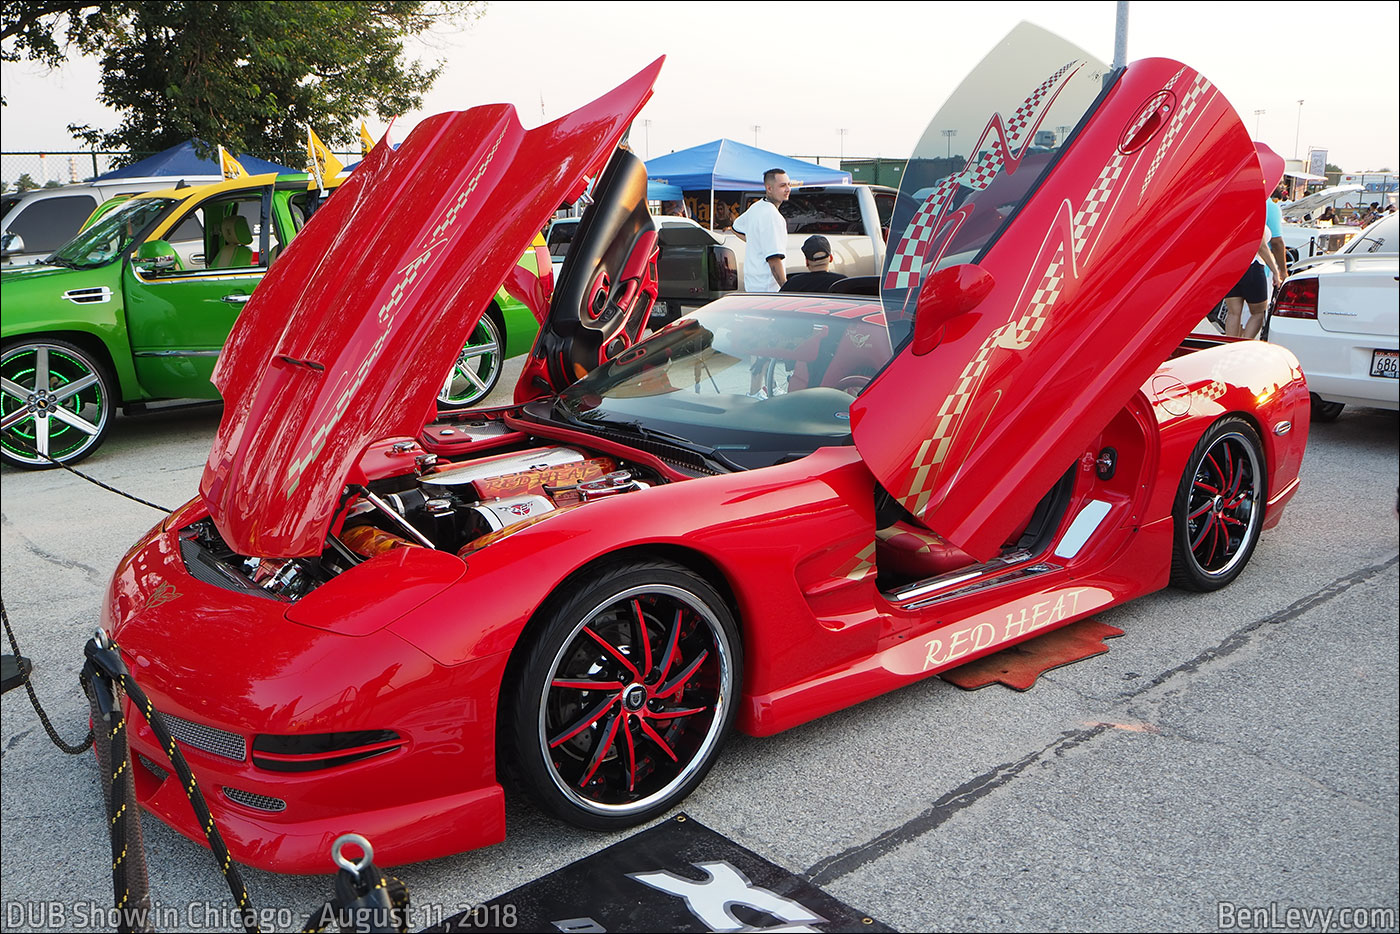 Red Heat, C5 Chevrolette Corvette